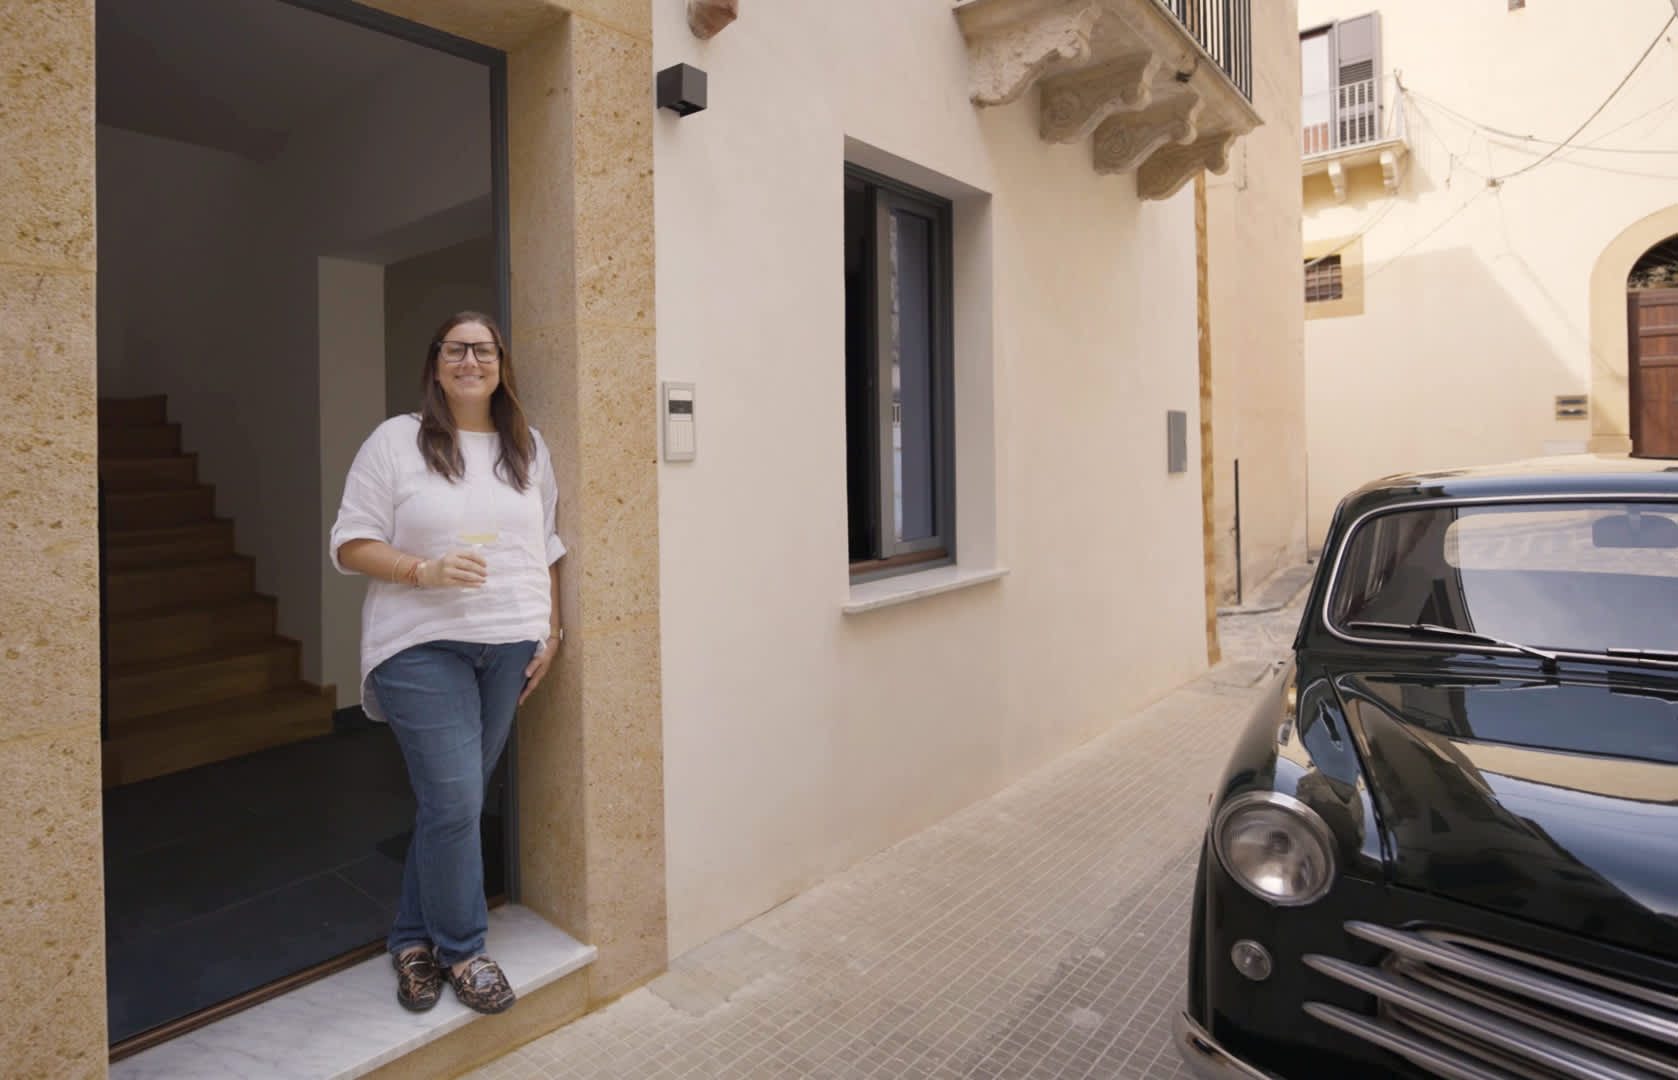 Amerikalı, İtalyan evini yenilemek için 446.000 dolar harcadı ve iş-hayat dengesini sağladı